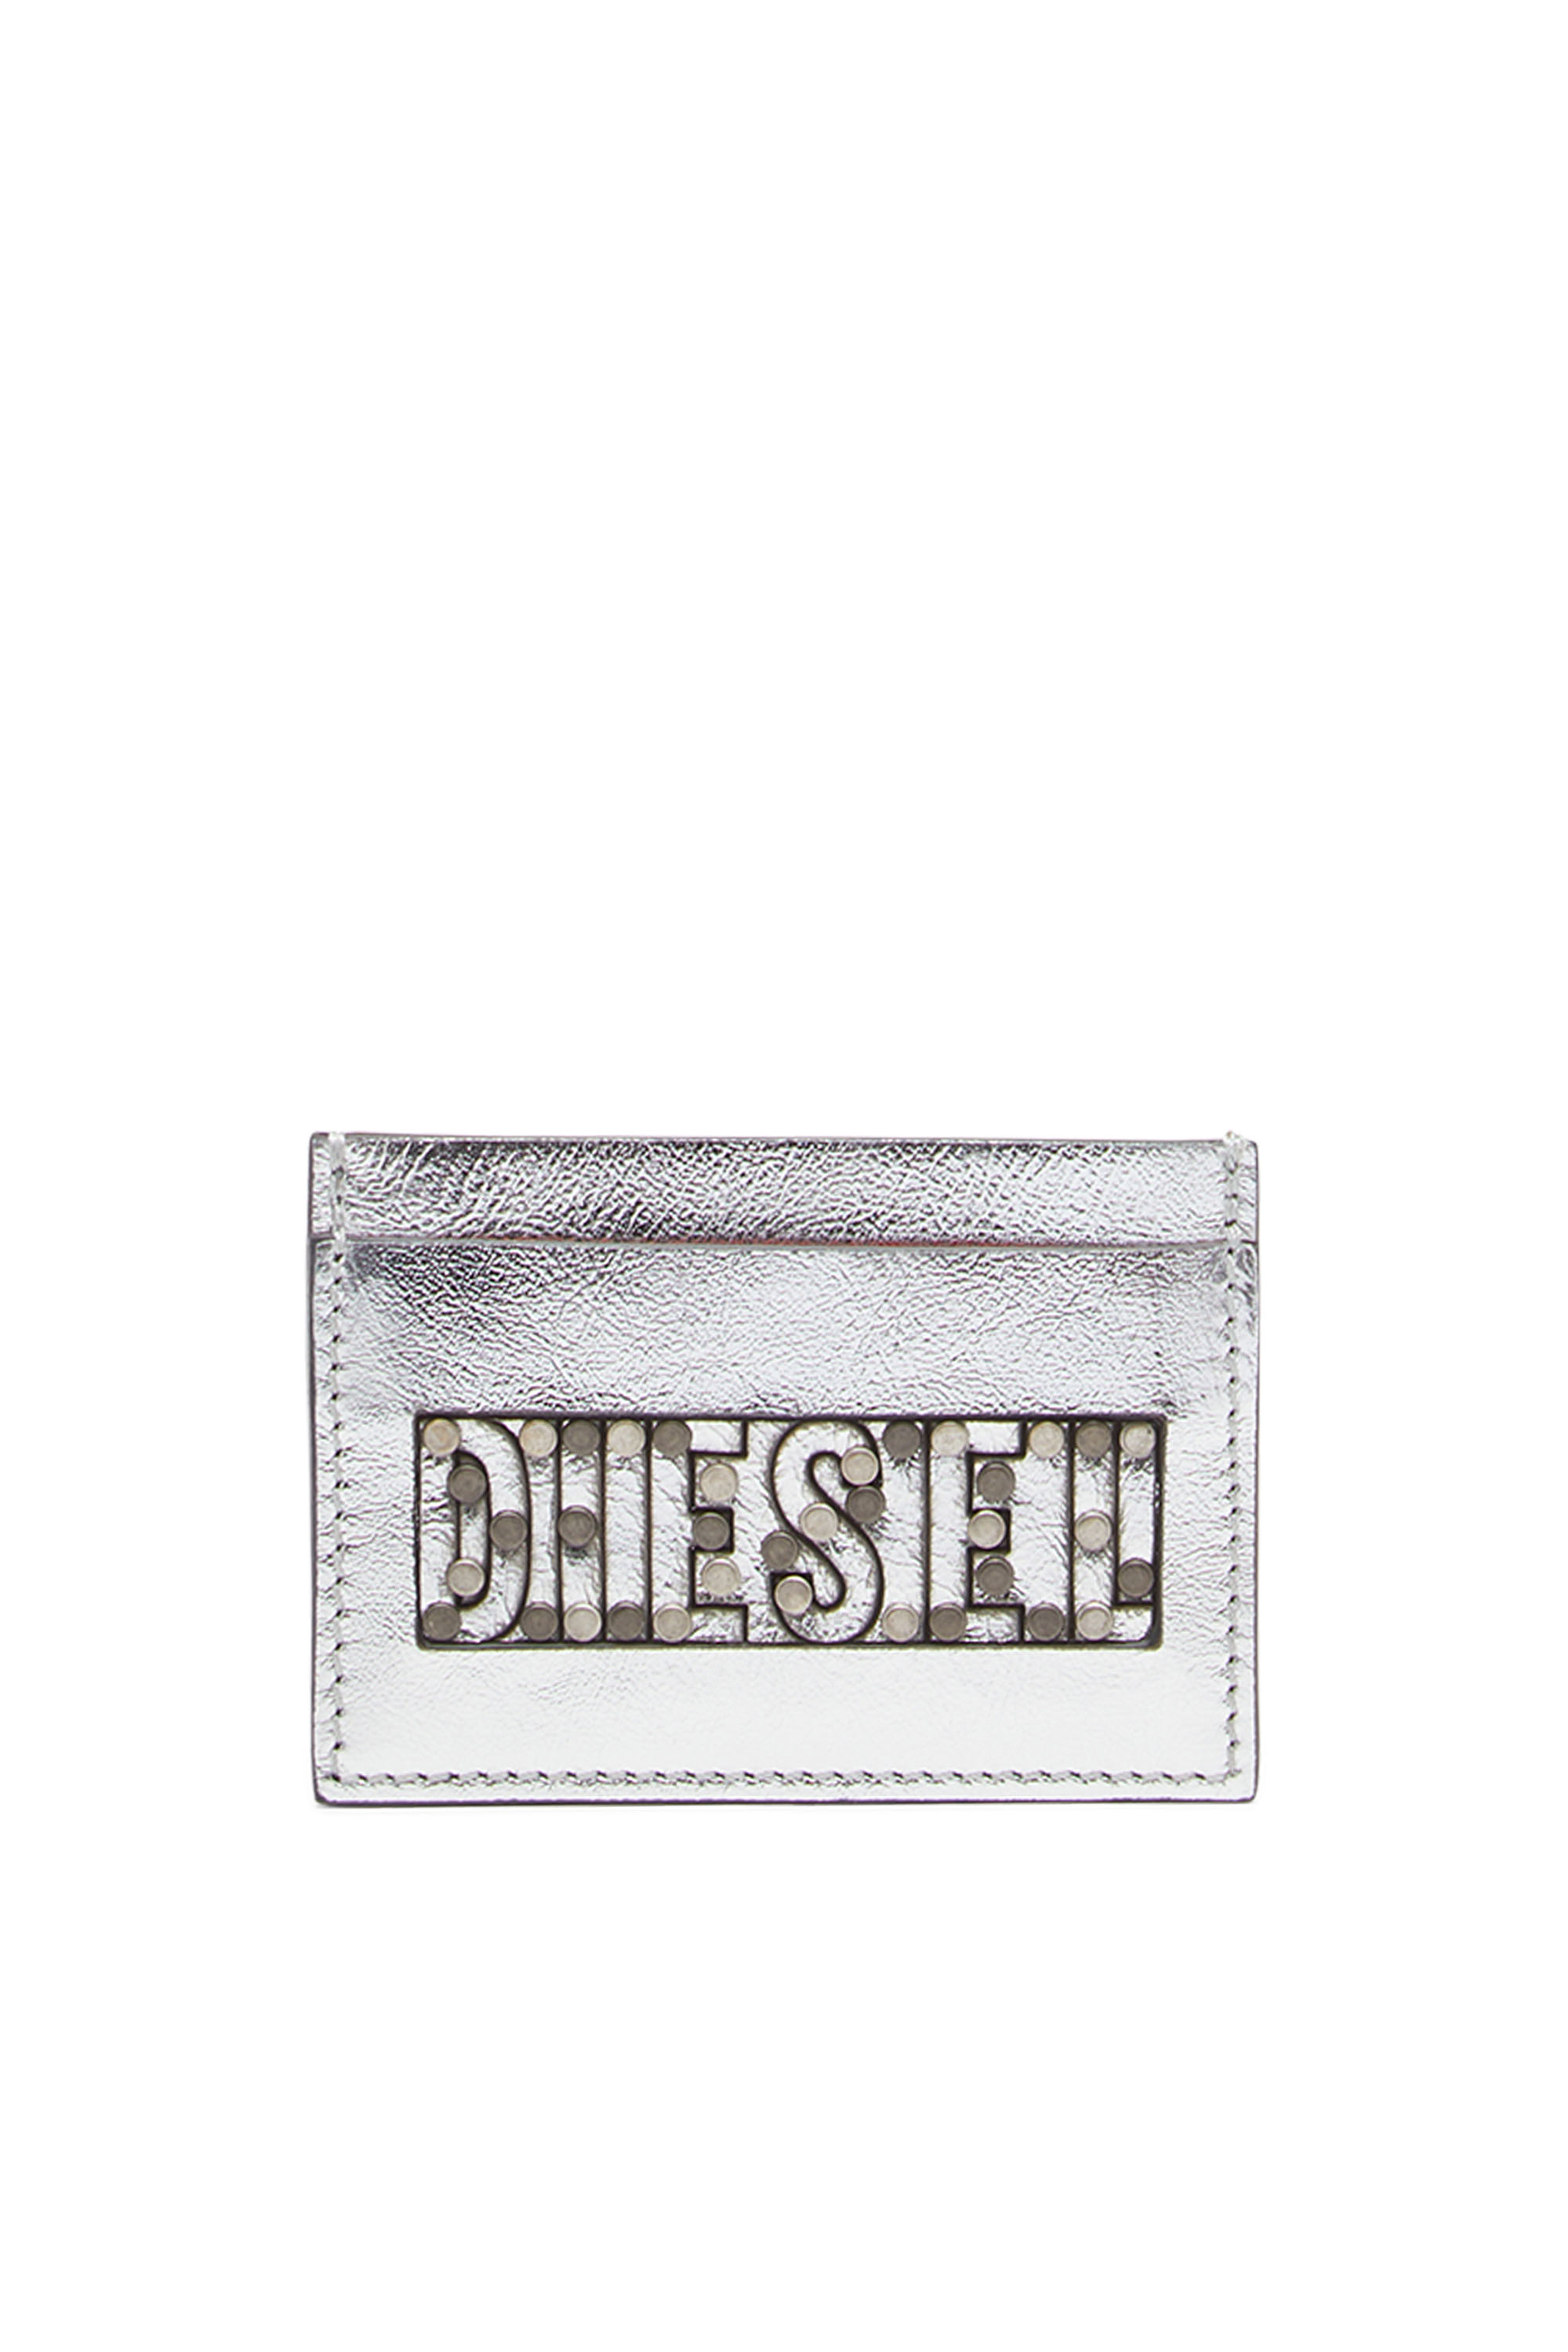 Diesel - JOHN, Silber - Image 1